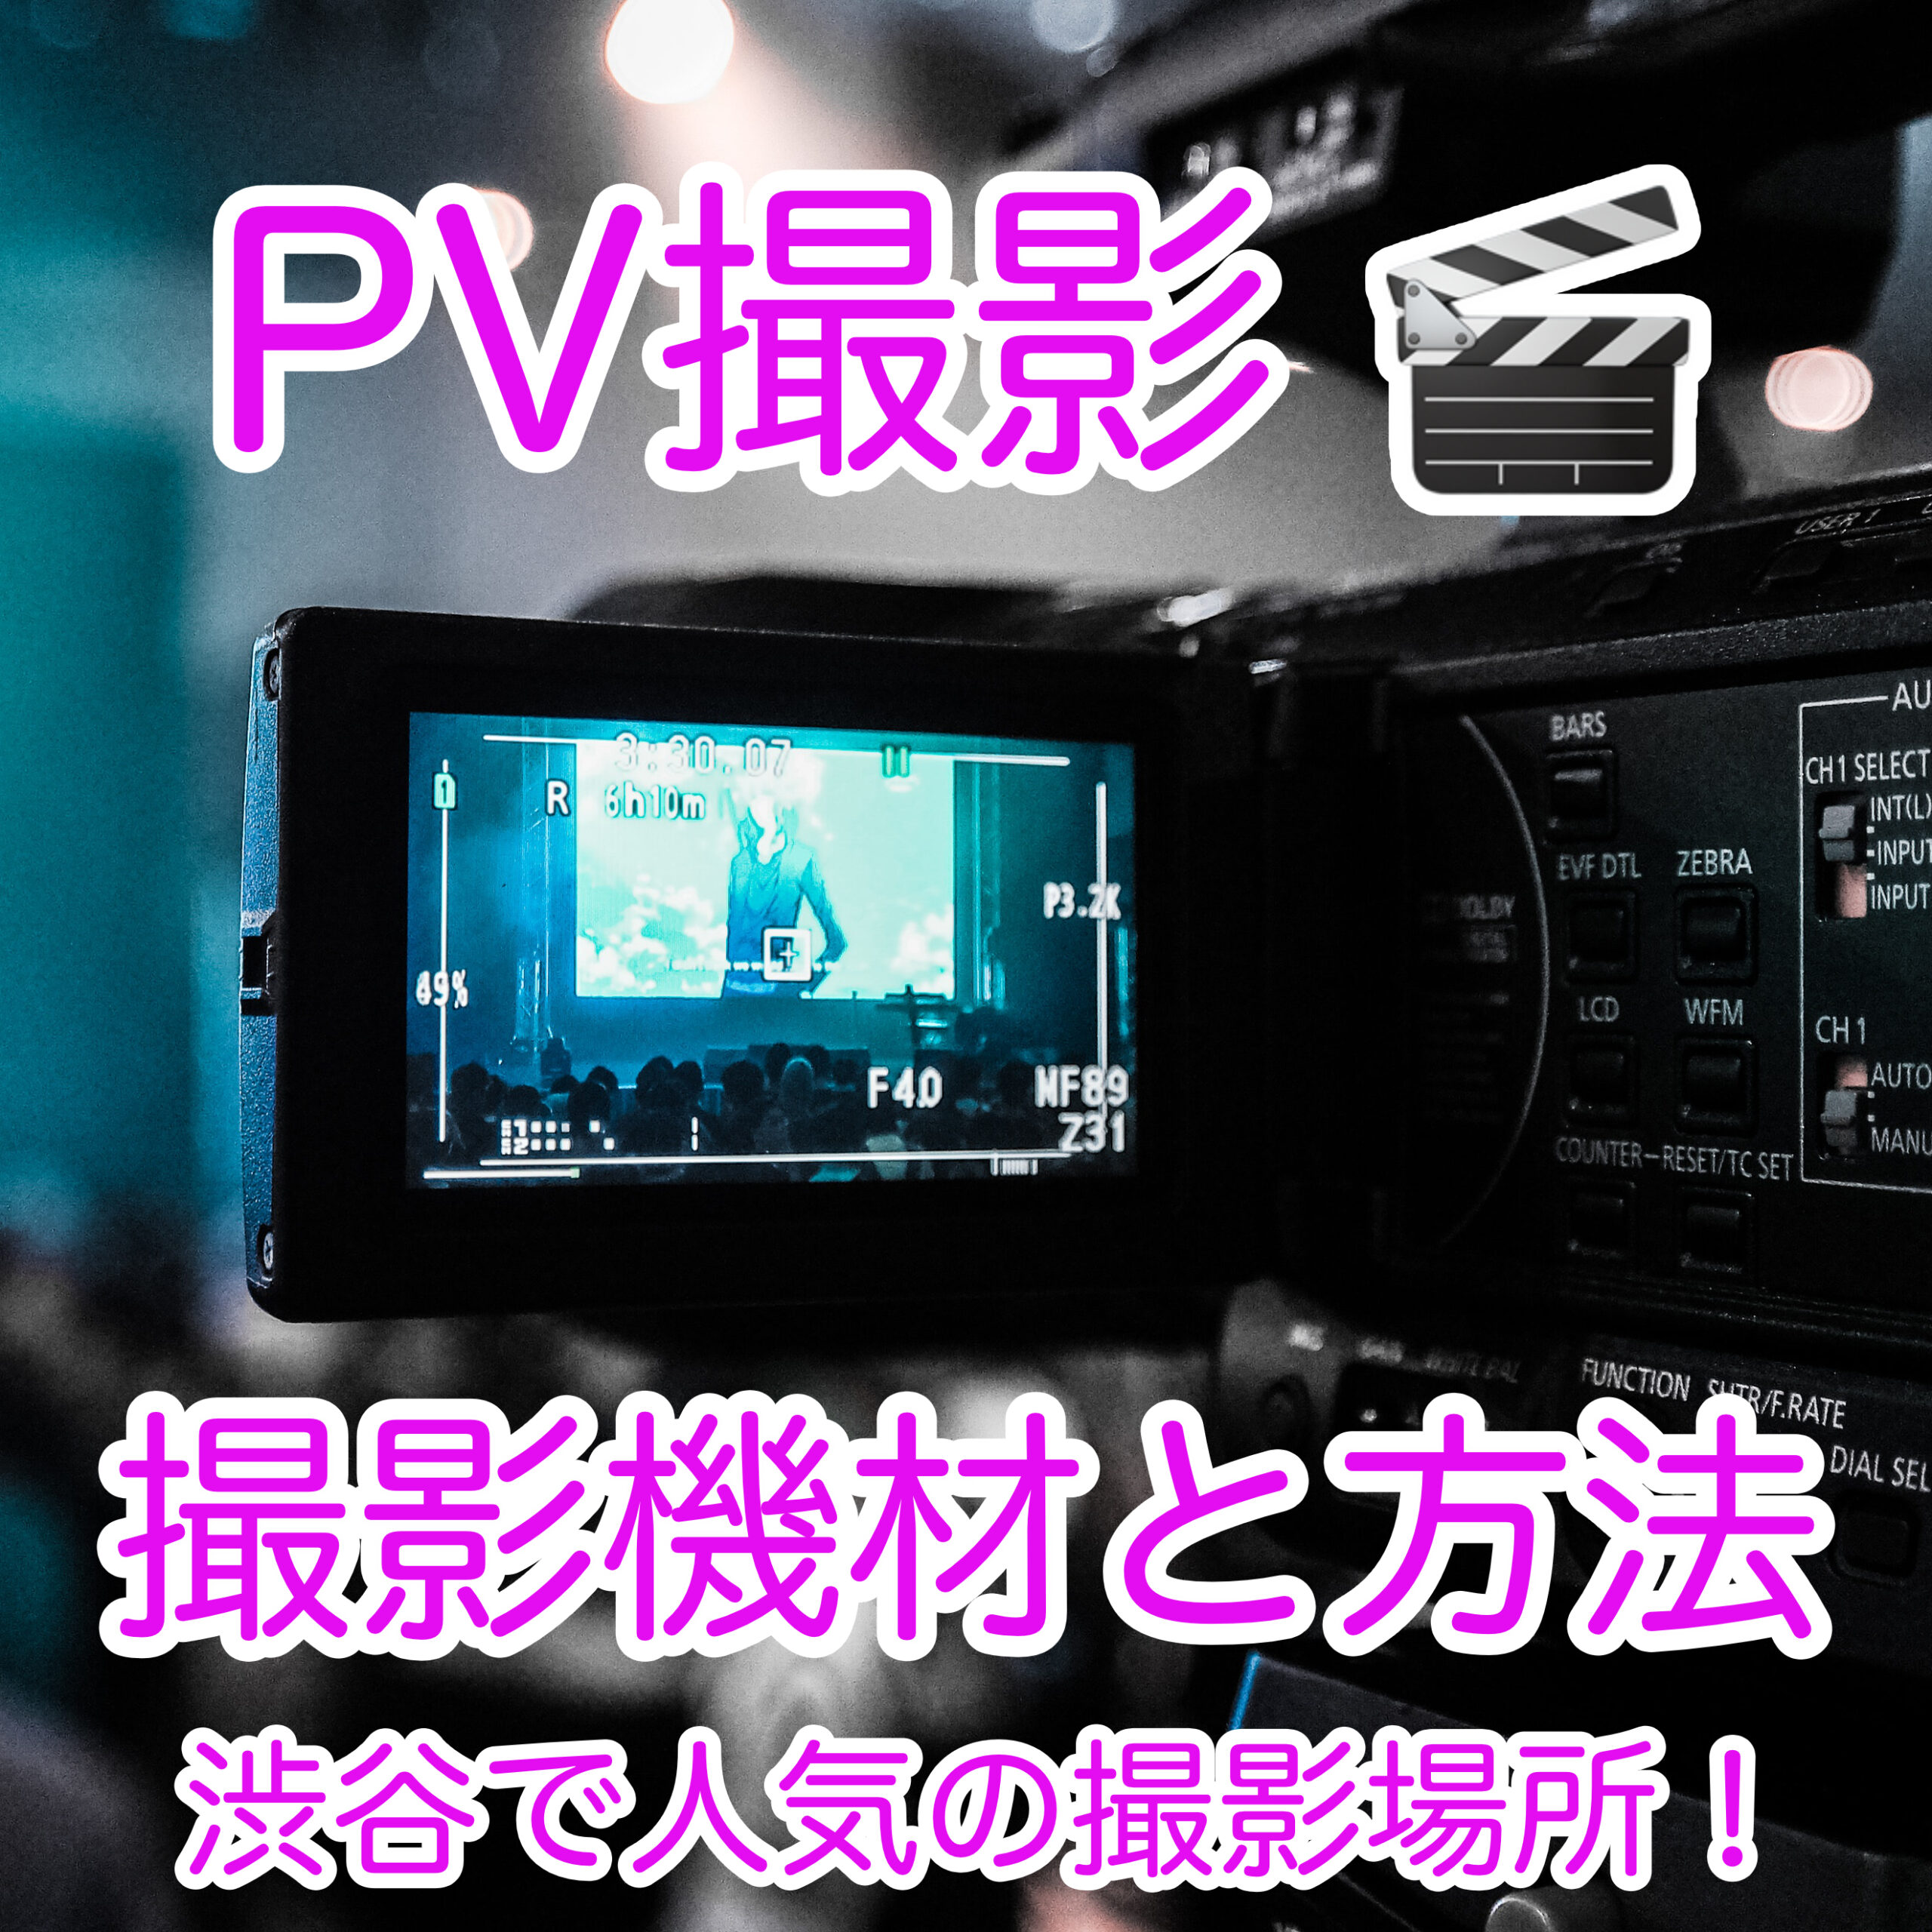 PV撮影の機材や方法、人気の場所を紹介します。